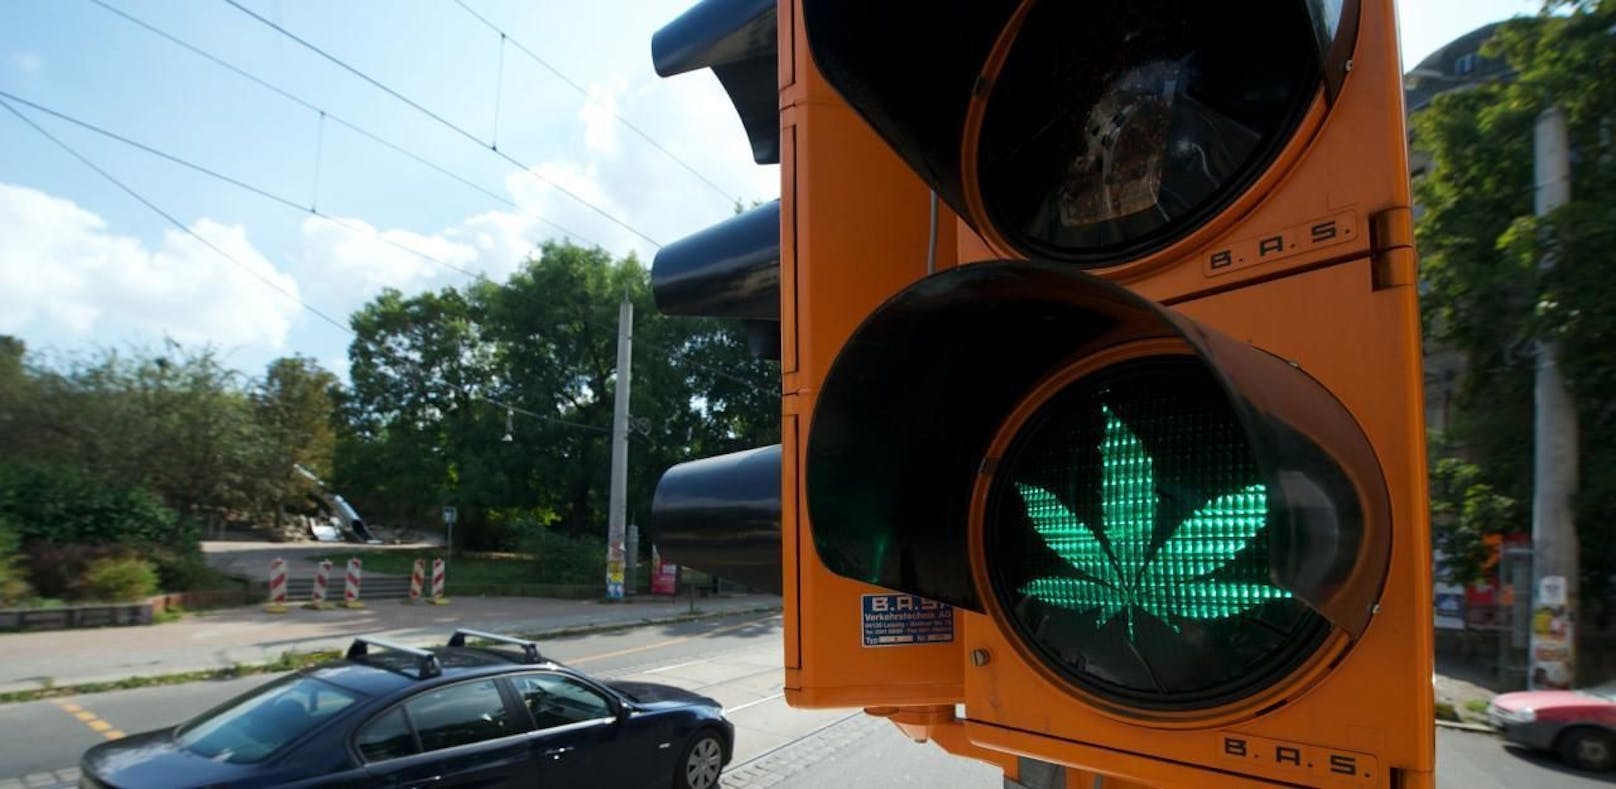 Luxemburg gibt grünes Licht für die Legalisierung von Cannabis. (Symbolbild)